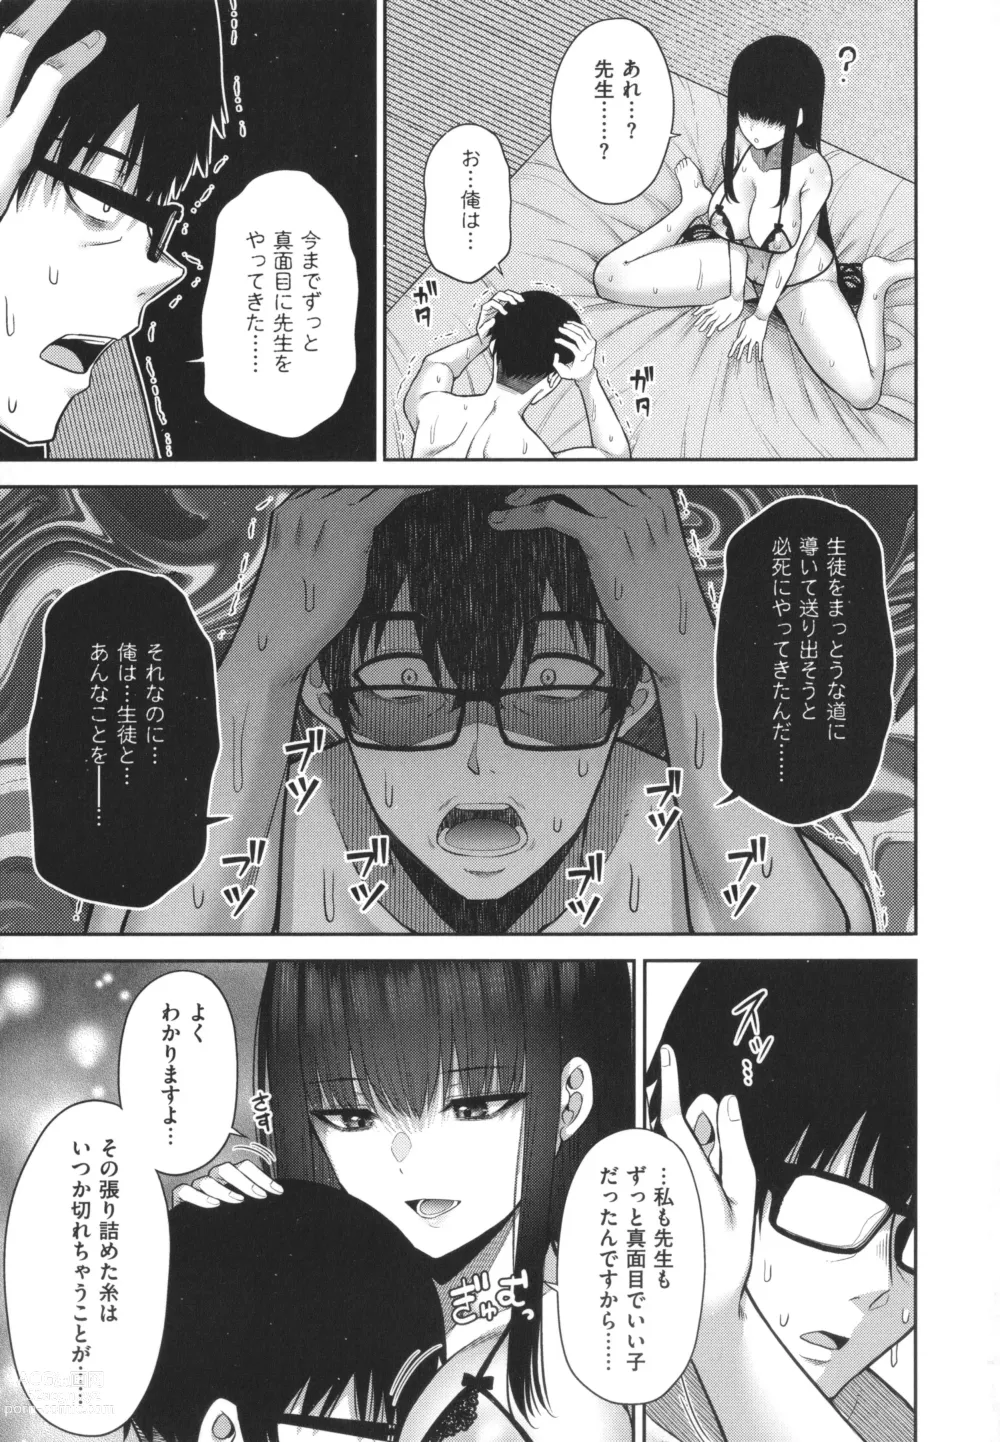 Page 250 of manga Enkou Shoujo wa Suki Desuka?